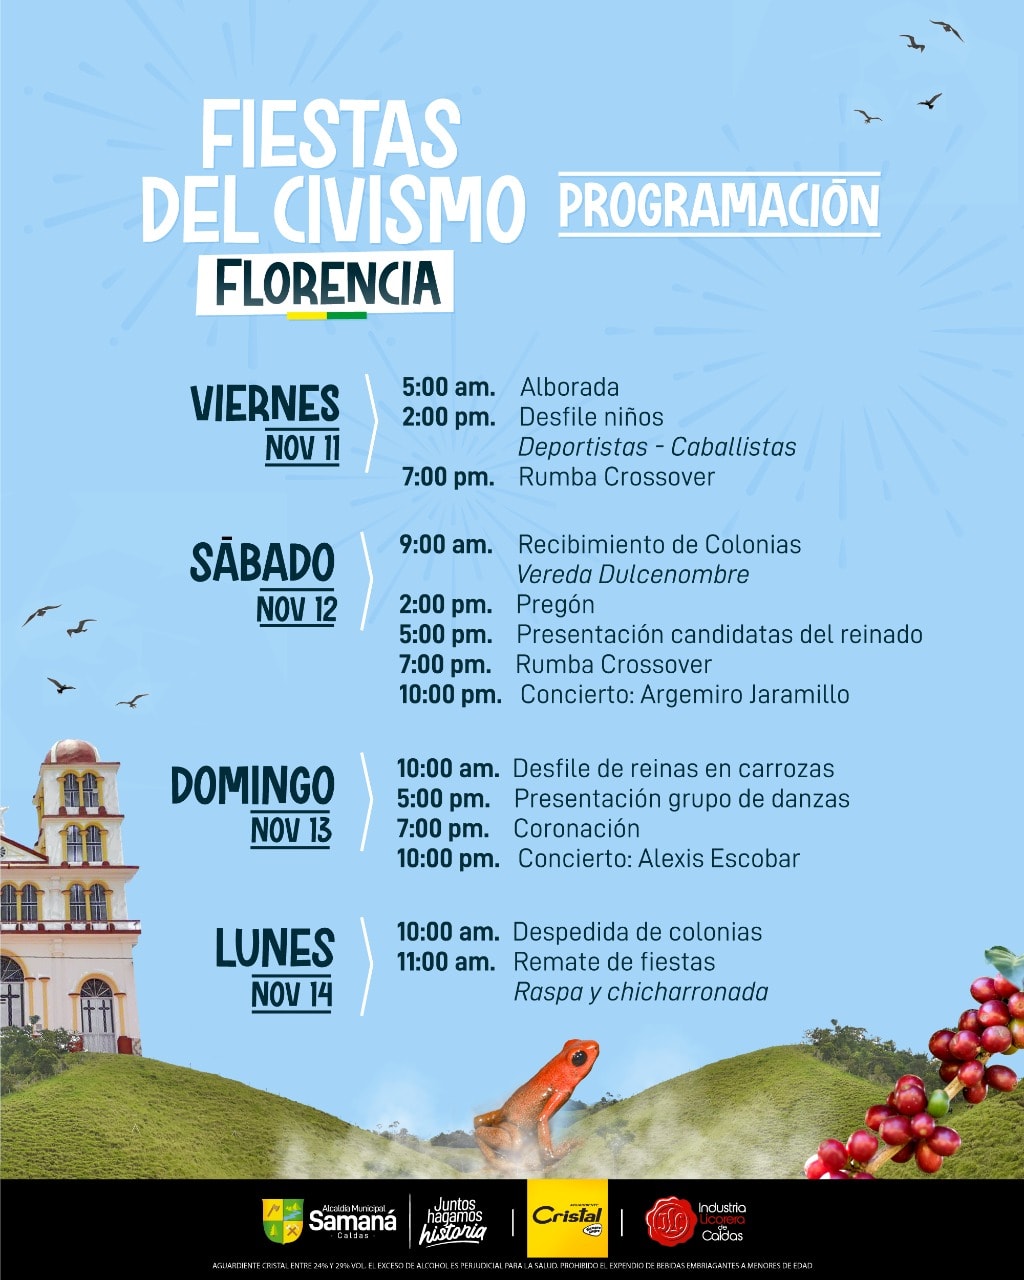 Evento: FIESTAS DEL CIVISMO EN FLORENCIA